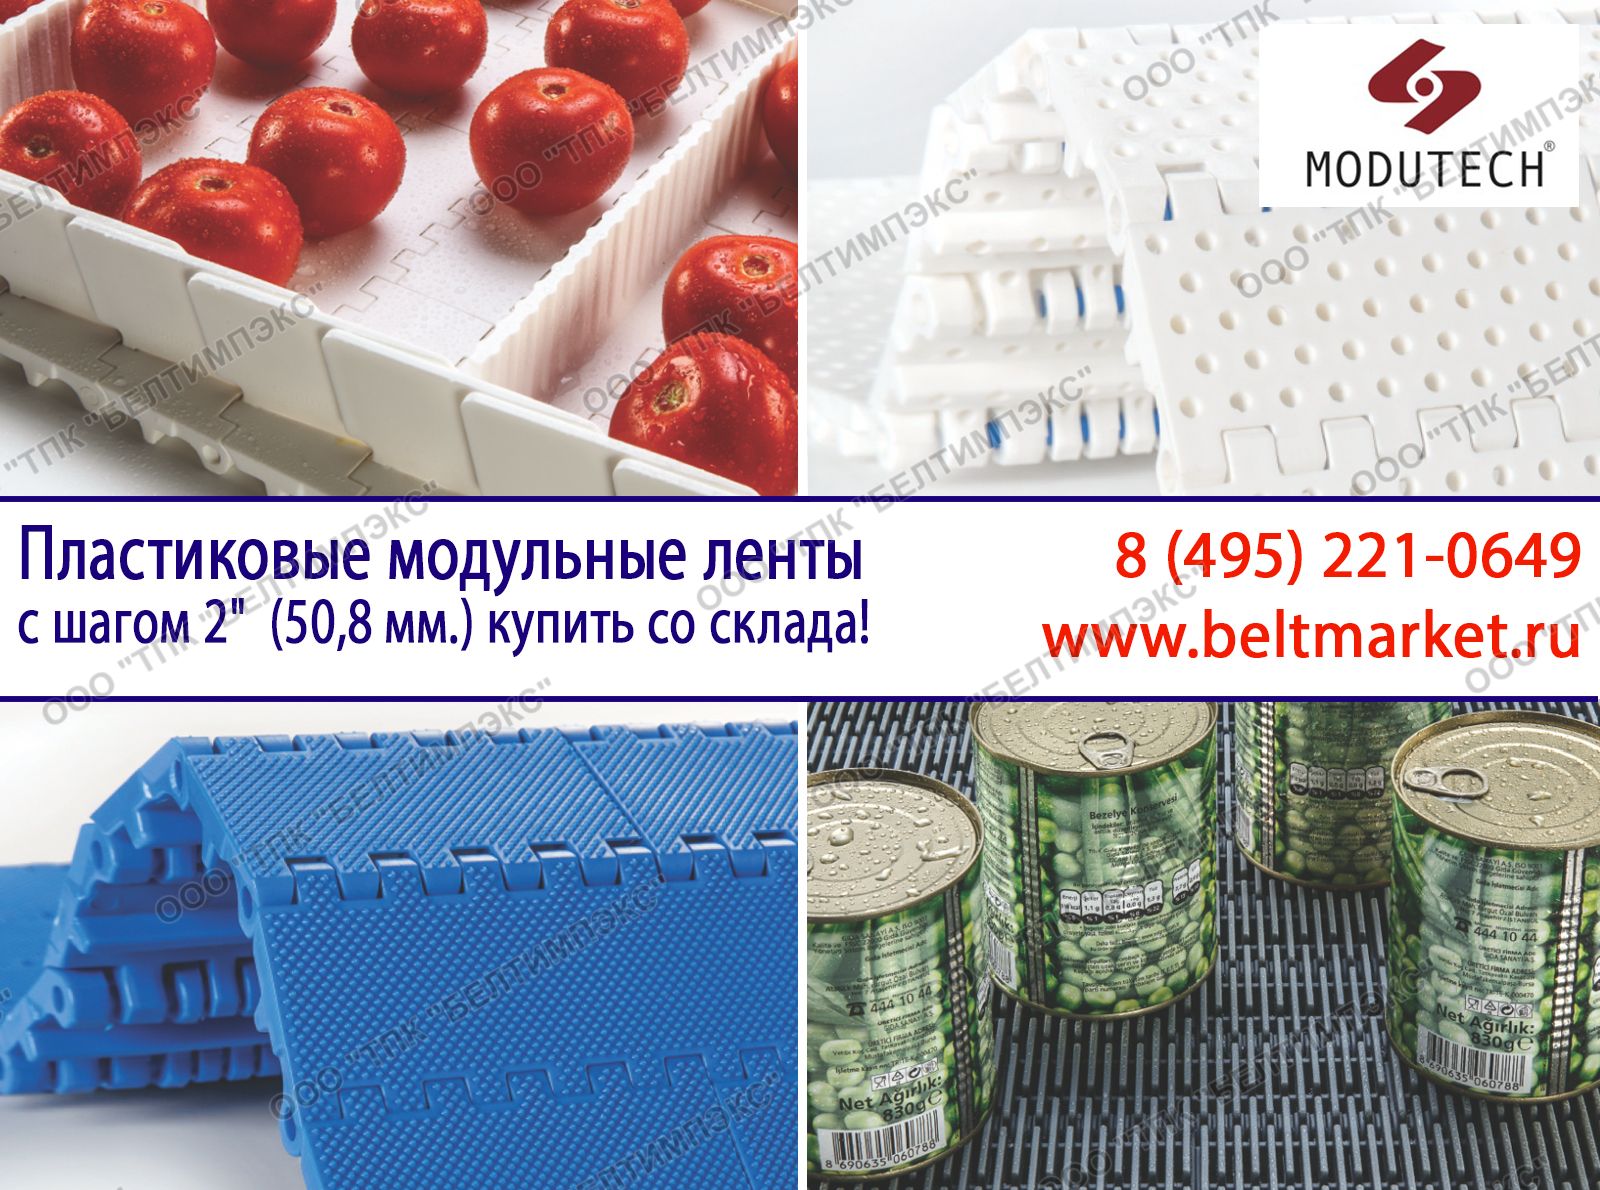 Пластиковые модульные ленты с шагом 2дюйм (50,8 мм.) купить со склада в Москве